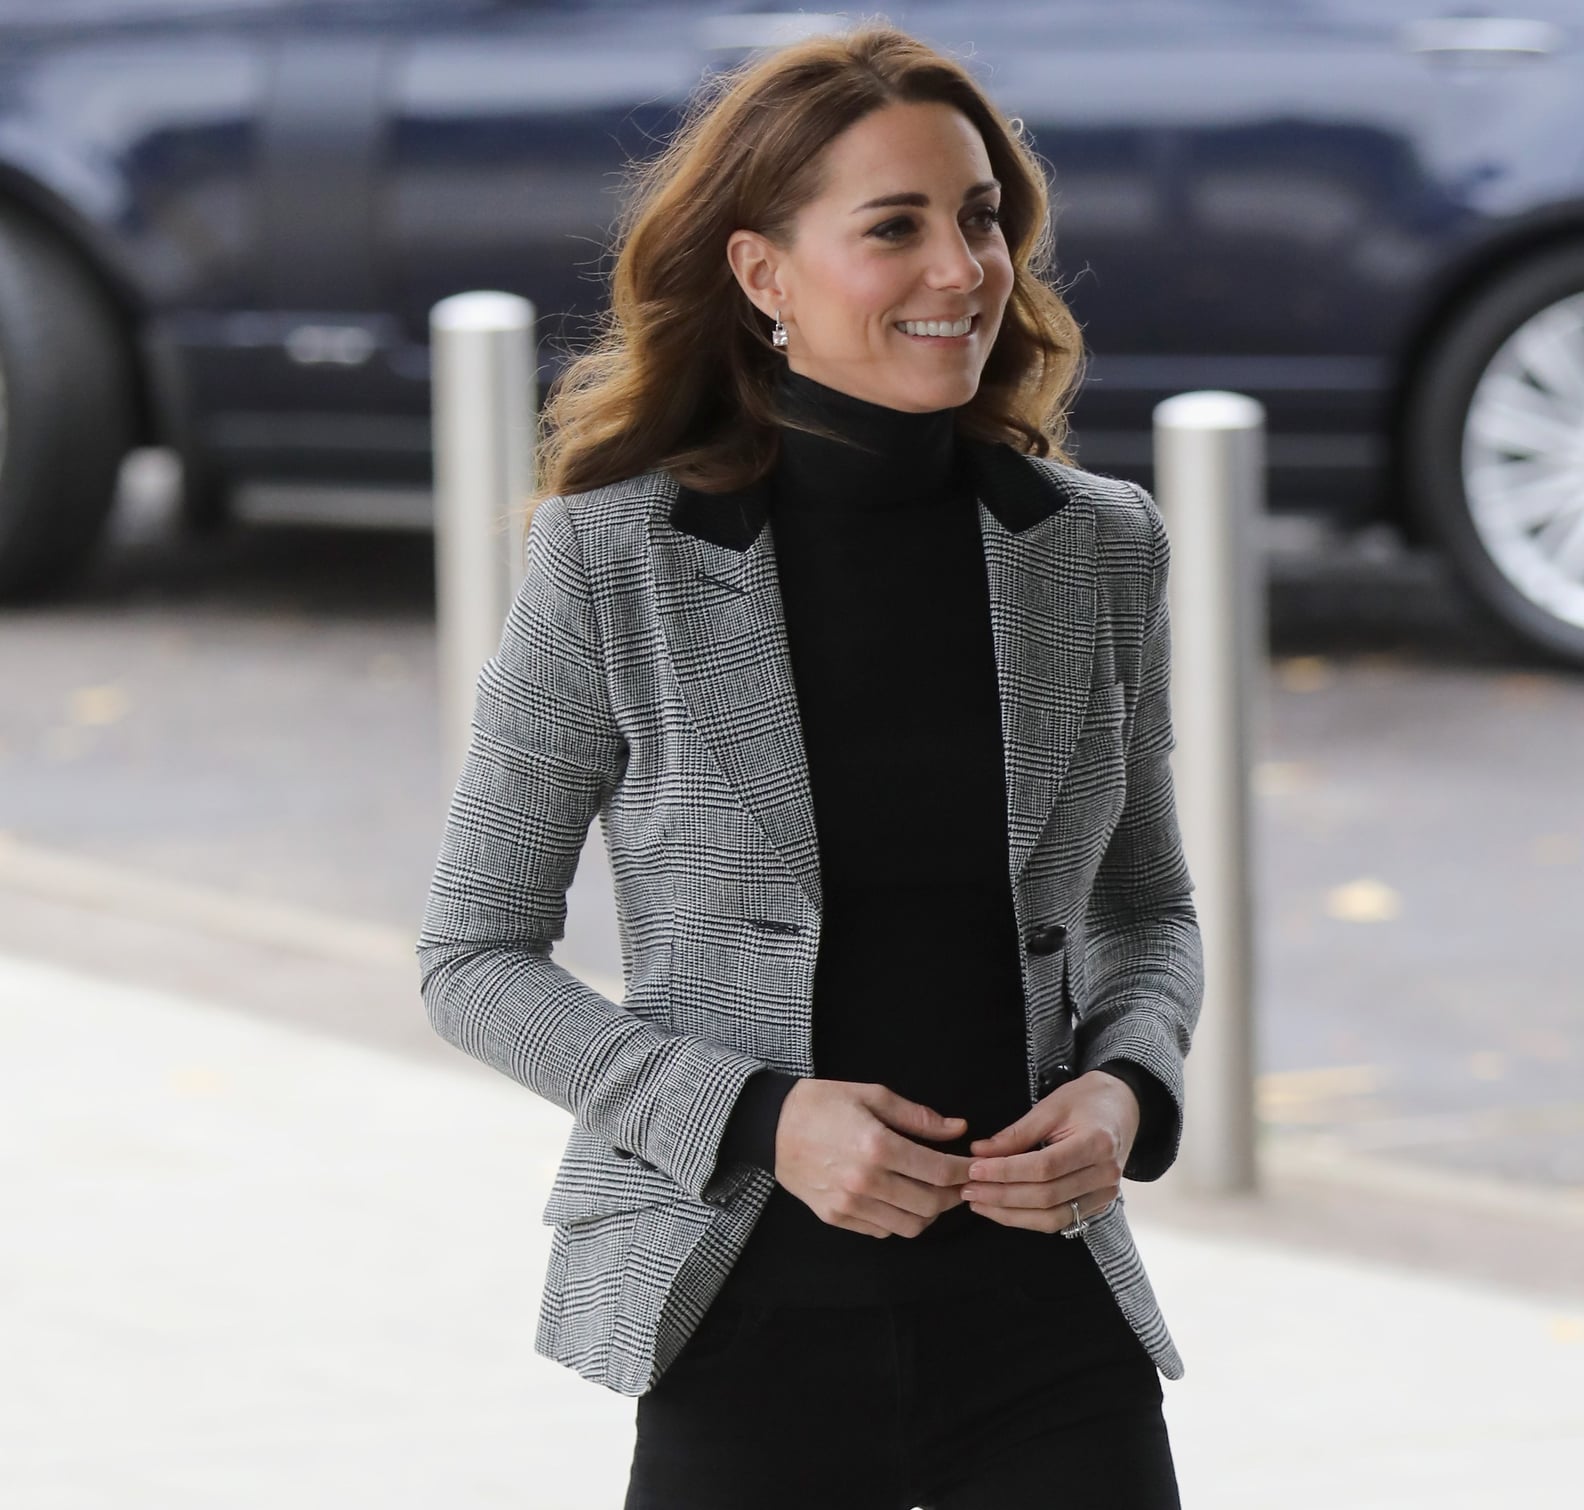 Kate Middleton Smythe Blazer and Skinny Jeans Oct 2018 | POPSUGAR Fashion